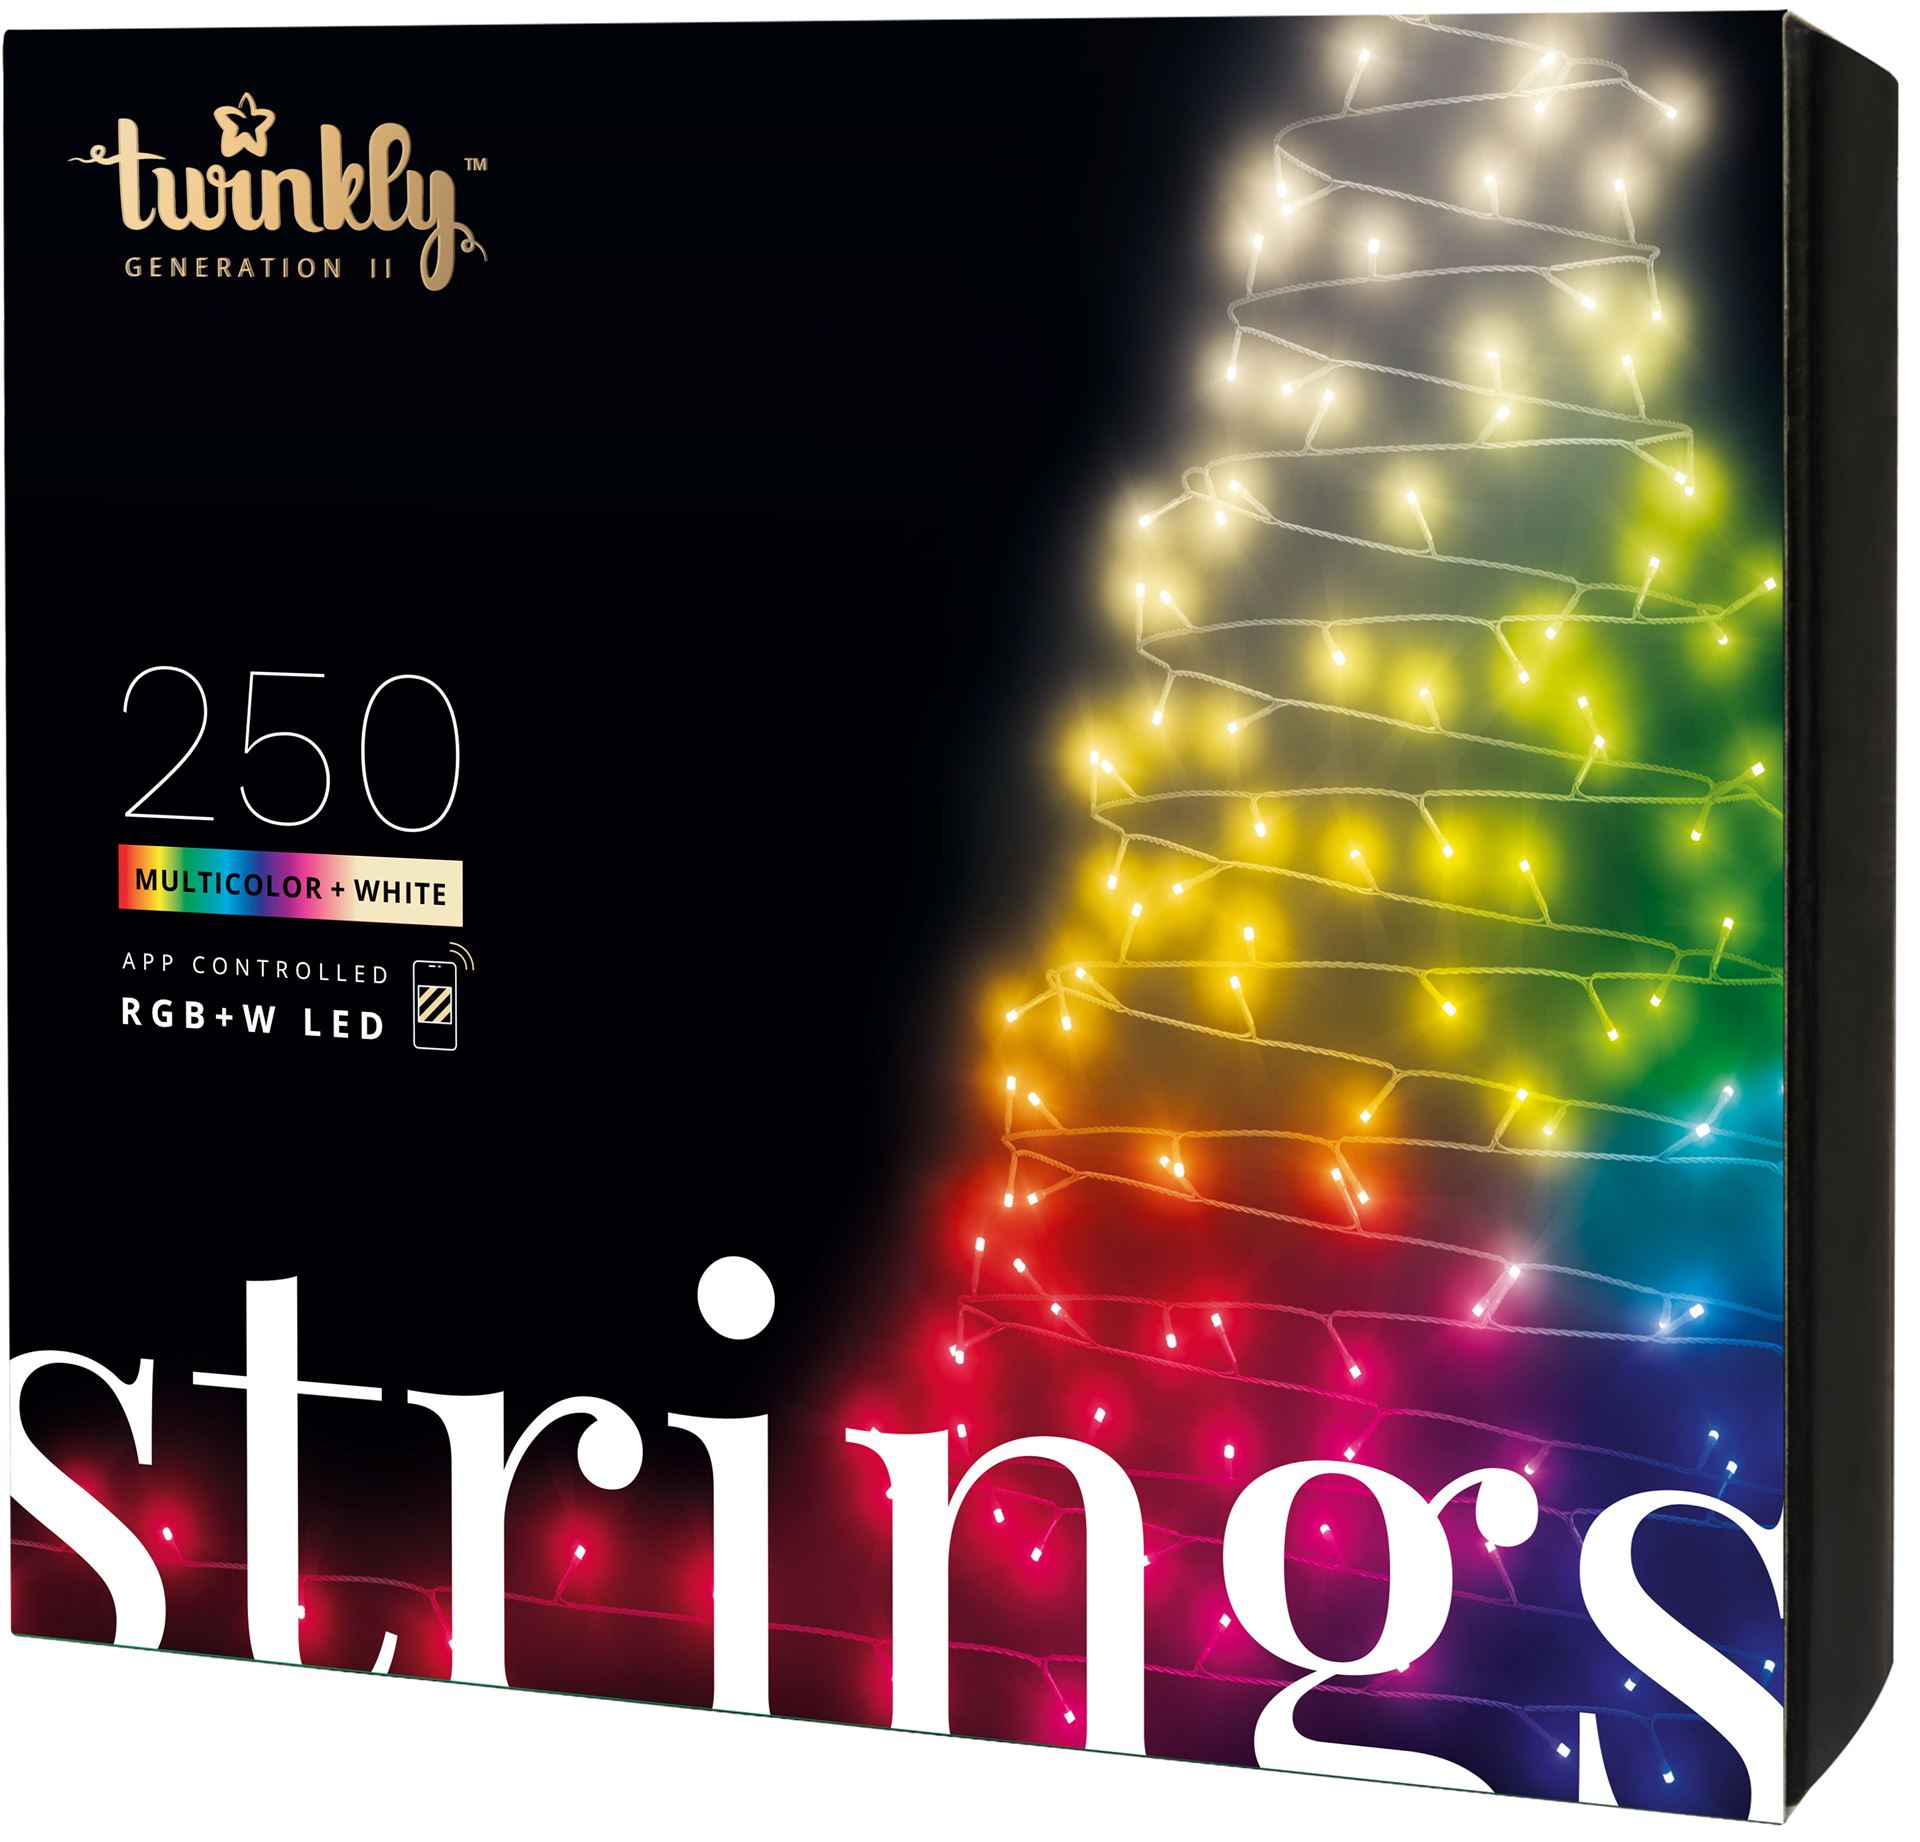 Twinkly - guirlandes lumineuses intelligentes pour sapin de Noël "Special Edition" - 20 m - 250 lumières LED colorées et blanc chaud (RGBW) - avec application mobile, minuterie et gradateur